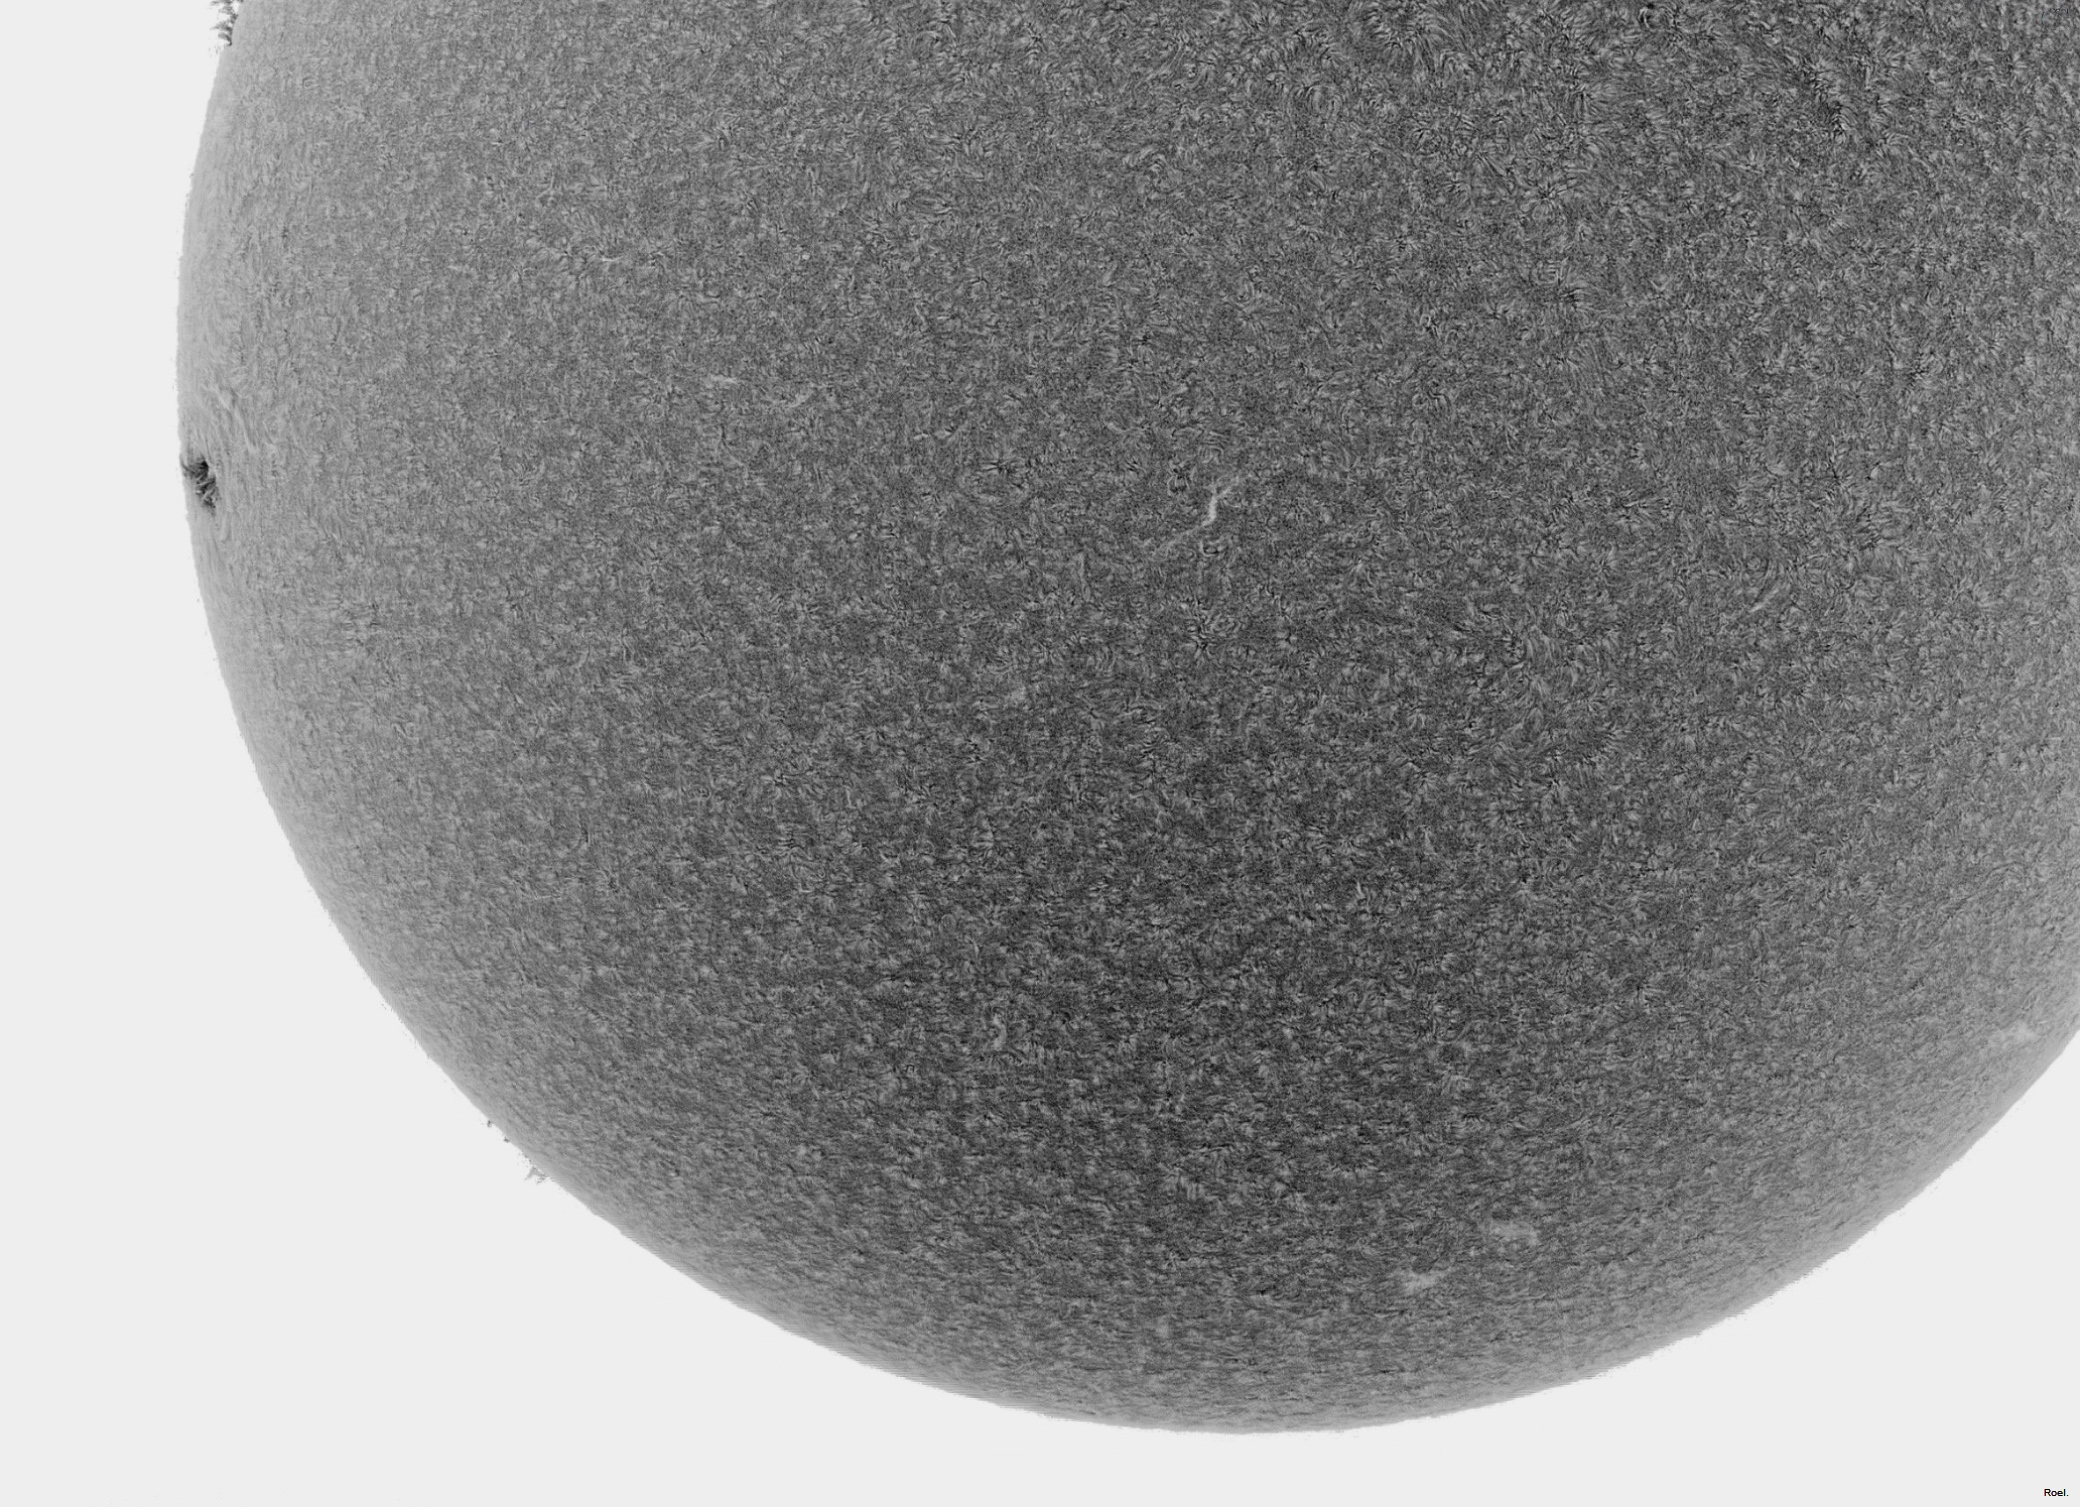 Sol del 14 de agosto del 2017-Solarmax-DS-1active zone-Drizzle15-1invs.jpg